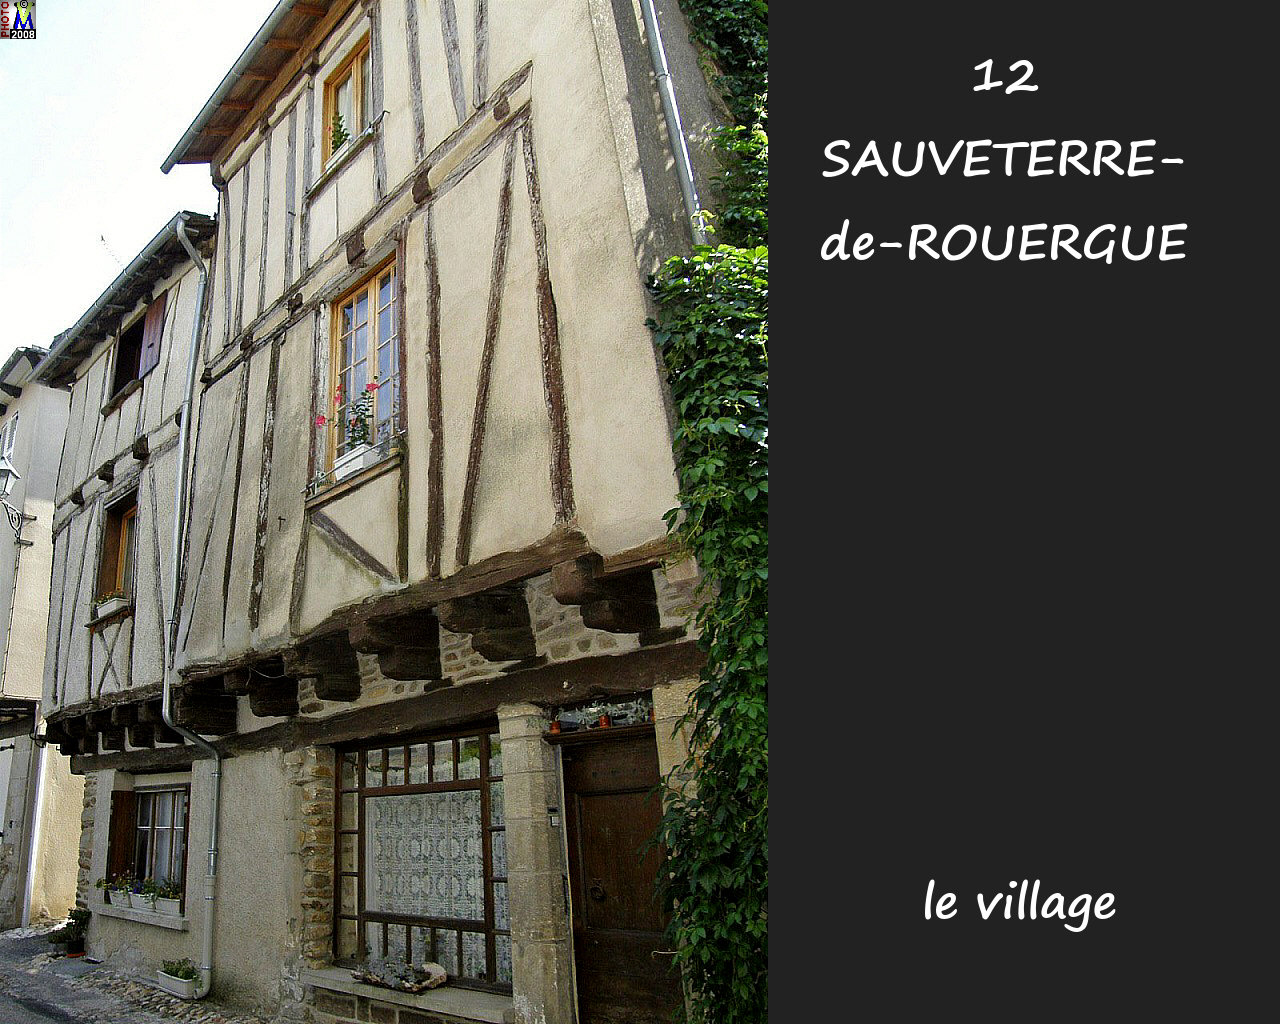 12SAUVETERRE-ROUERGUE_village_152.jpg